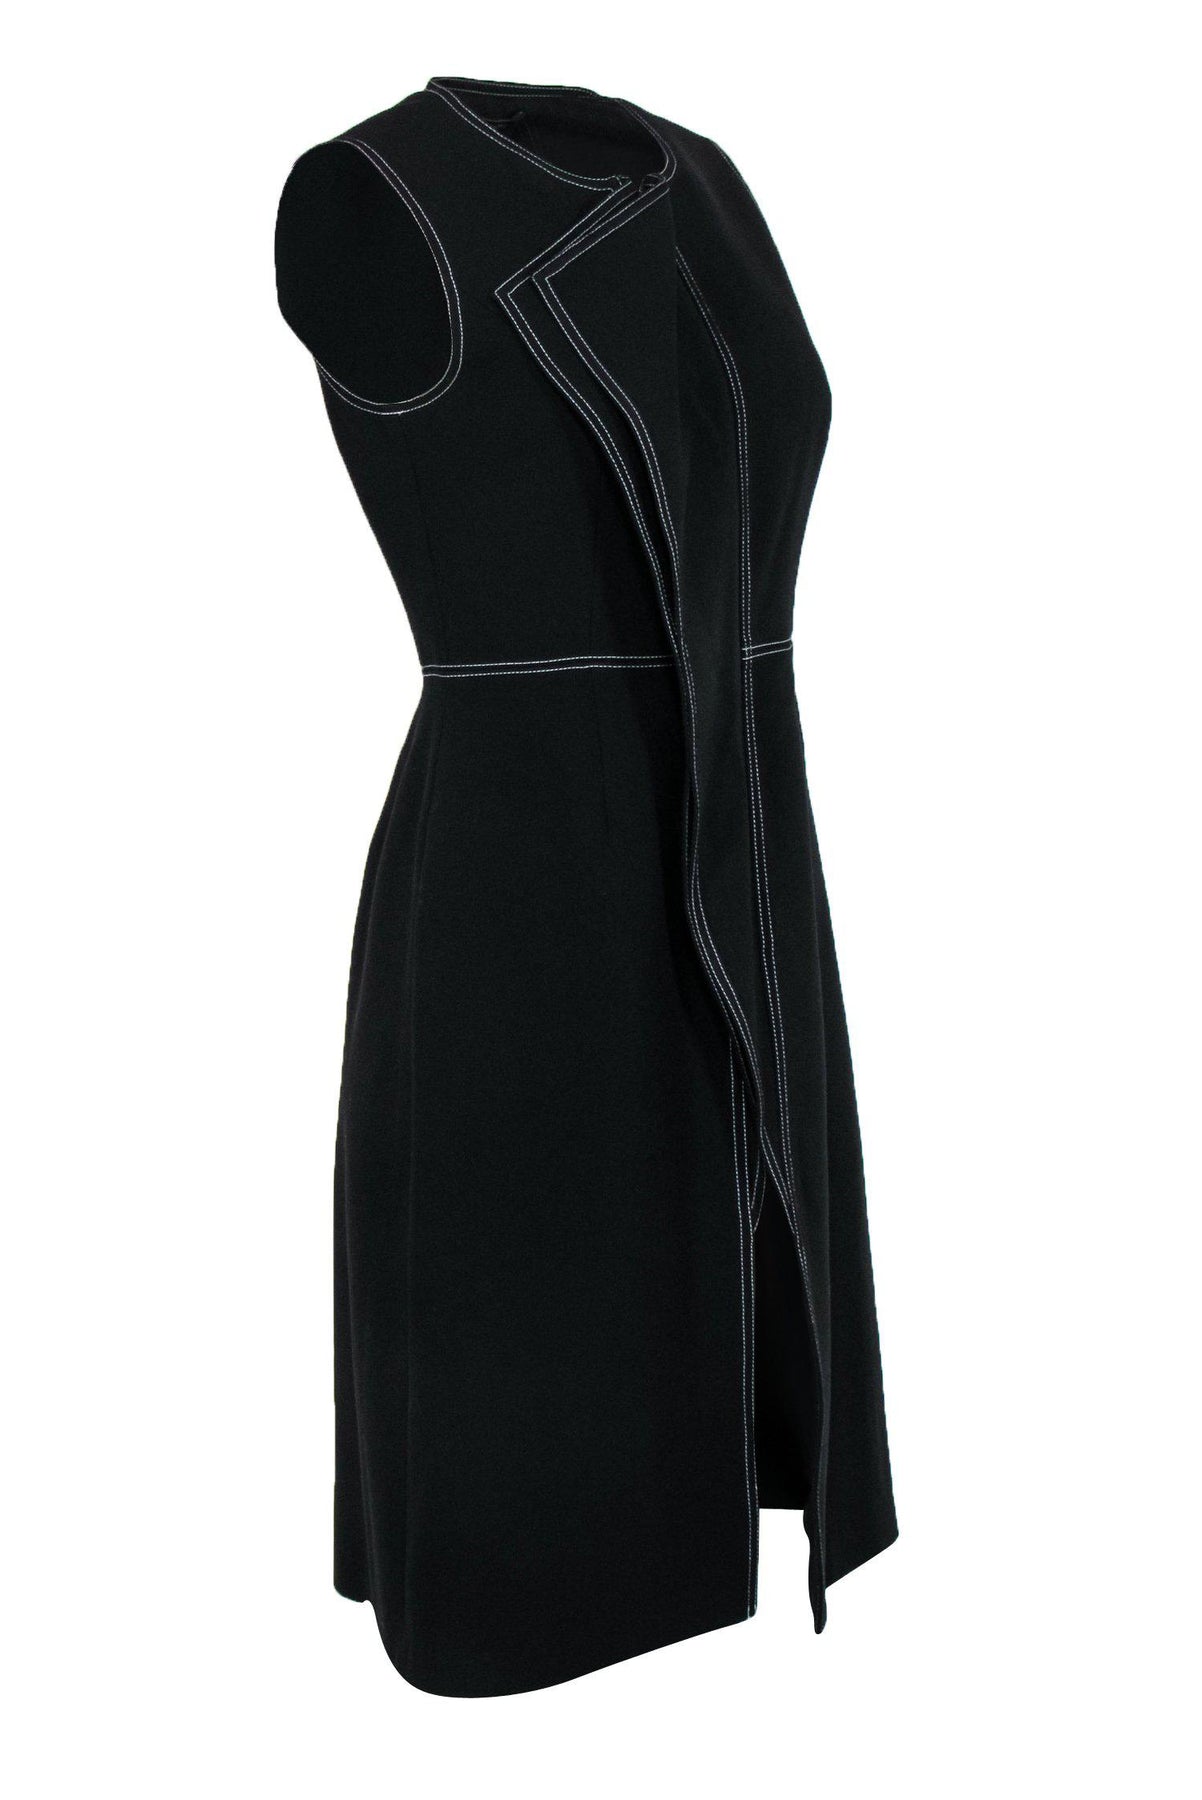 Shop Our BCBG Max Azria - Black Longline Zip-Up Draped Vest w/ White ...